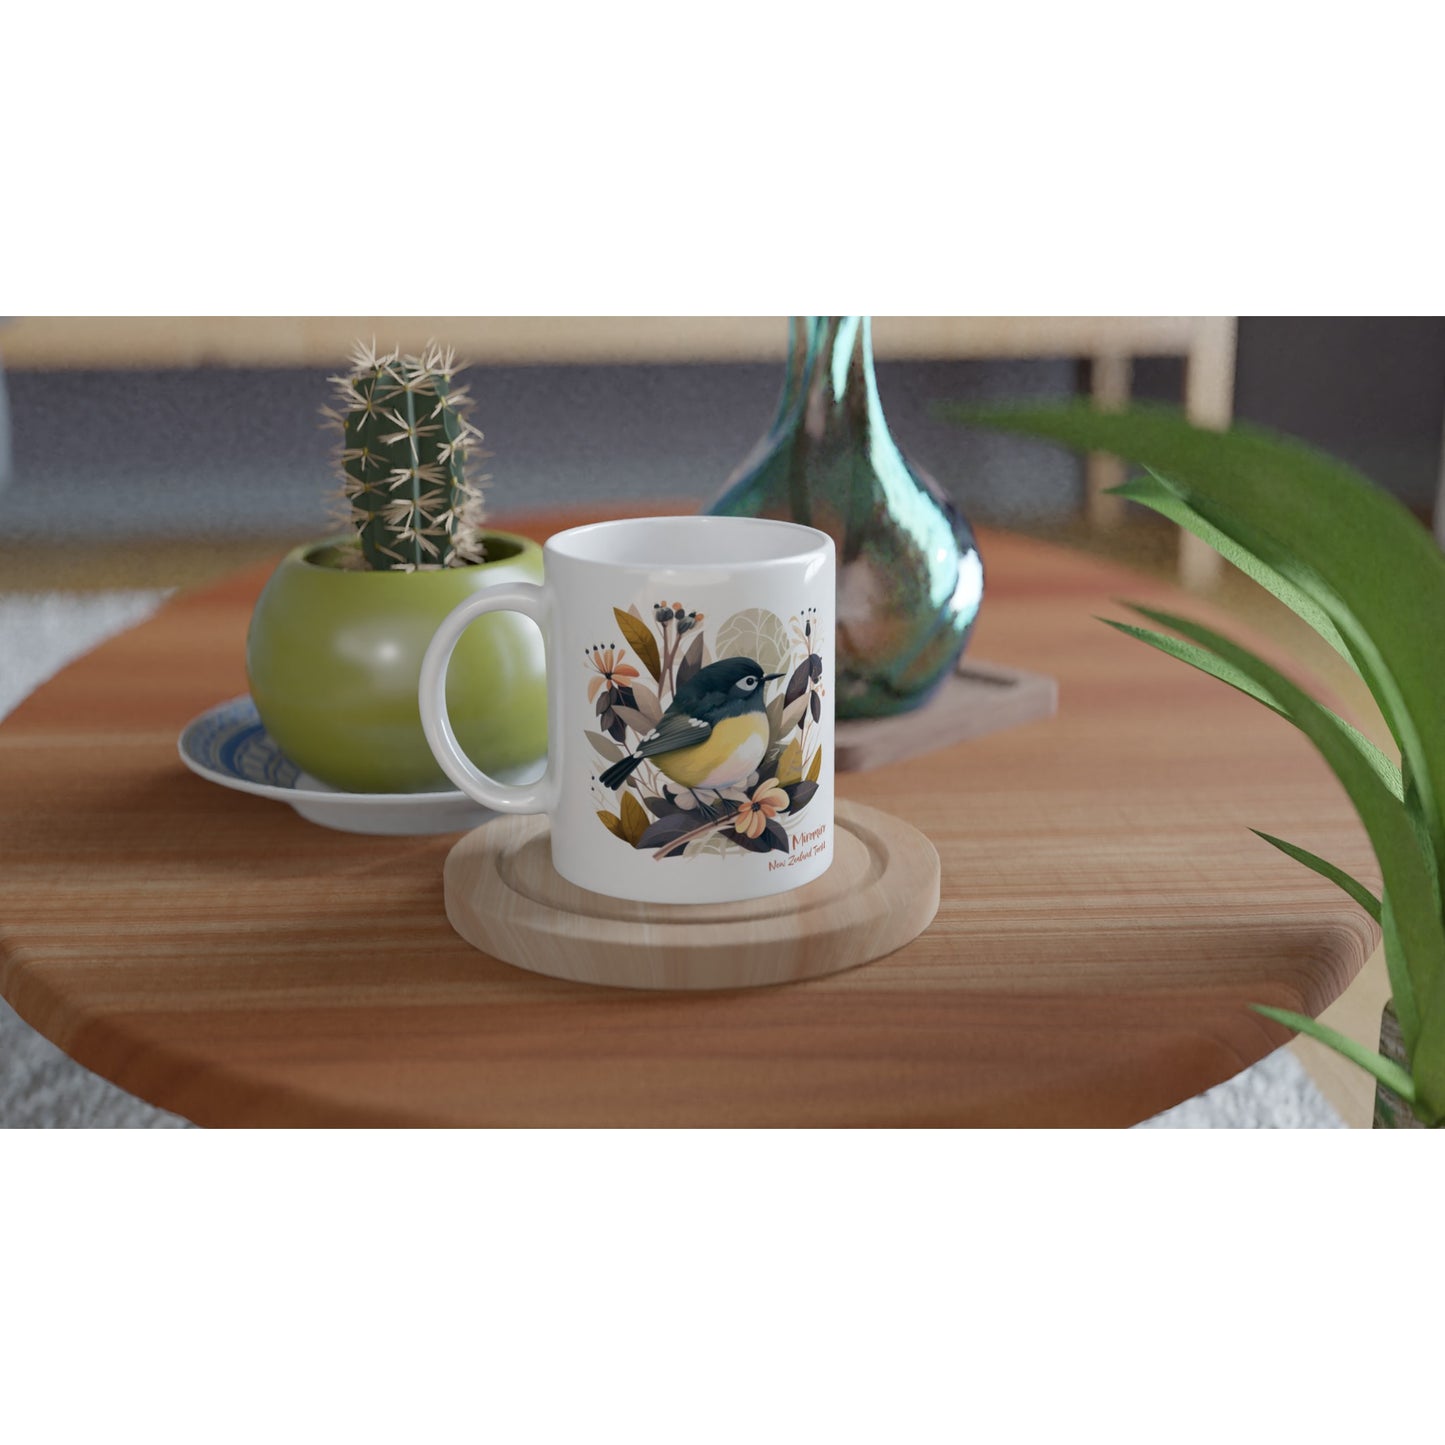 Enchanting Beauty: 11oz Ceramic Mug with New Zealand Tomtit Bird